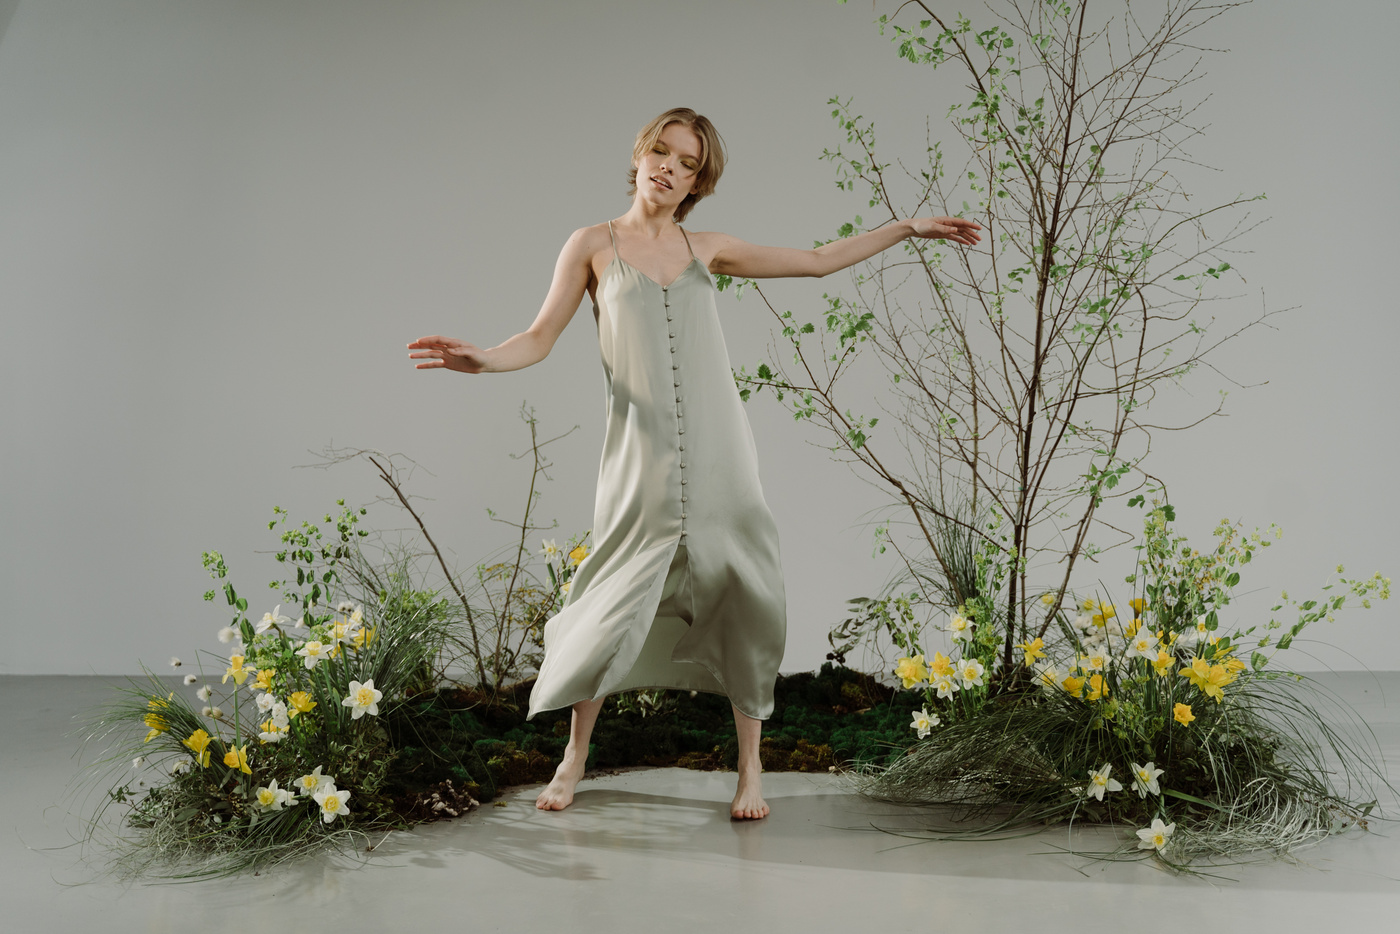 A Woman in Beige Dress Dancing beside the Plants